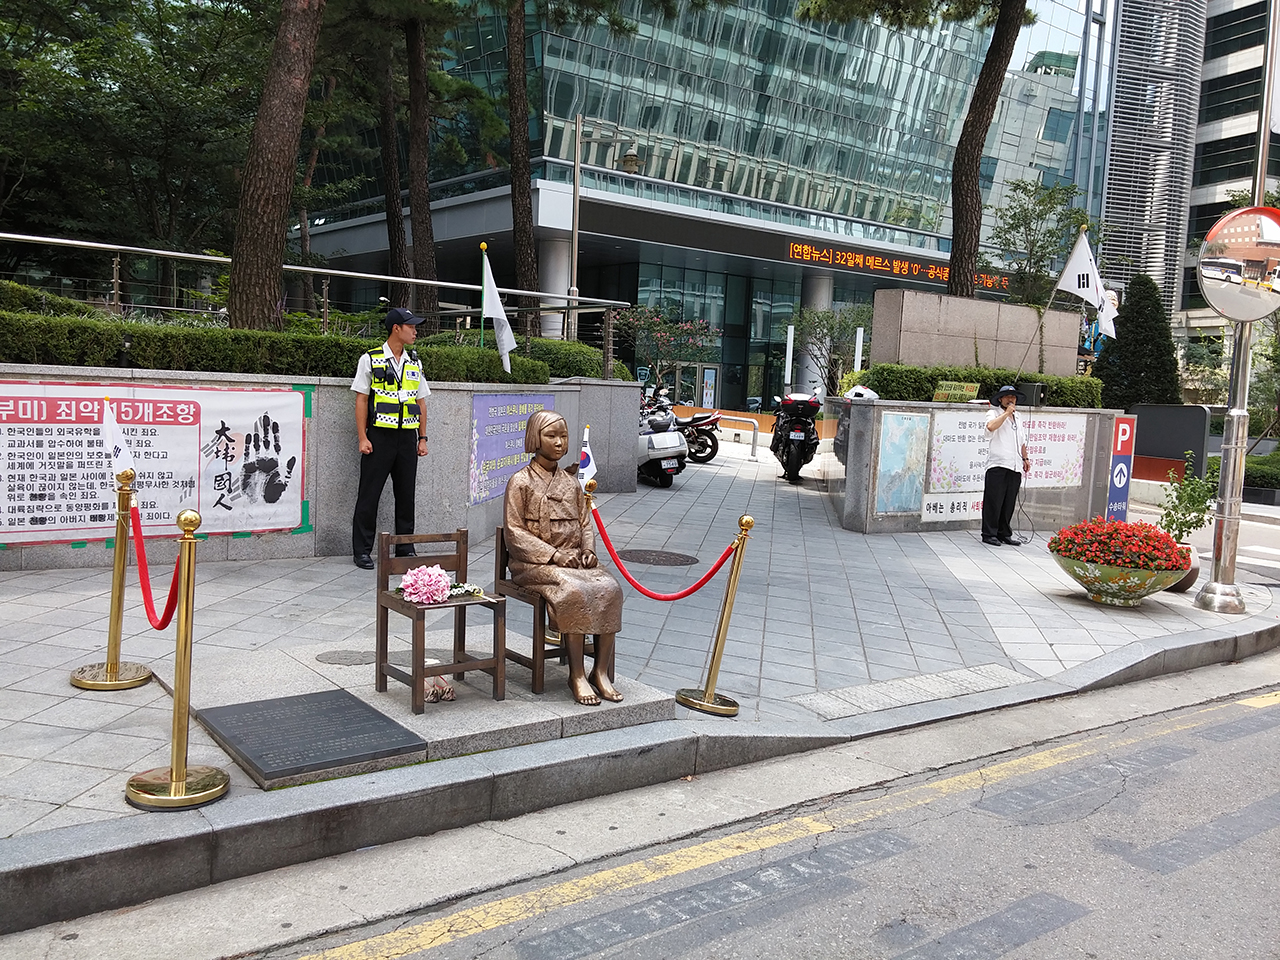 일본대사관을 응시하는 위안부 소녀상. 서울 광화문광장 동쪽에서 찍은 사진. 